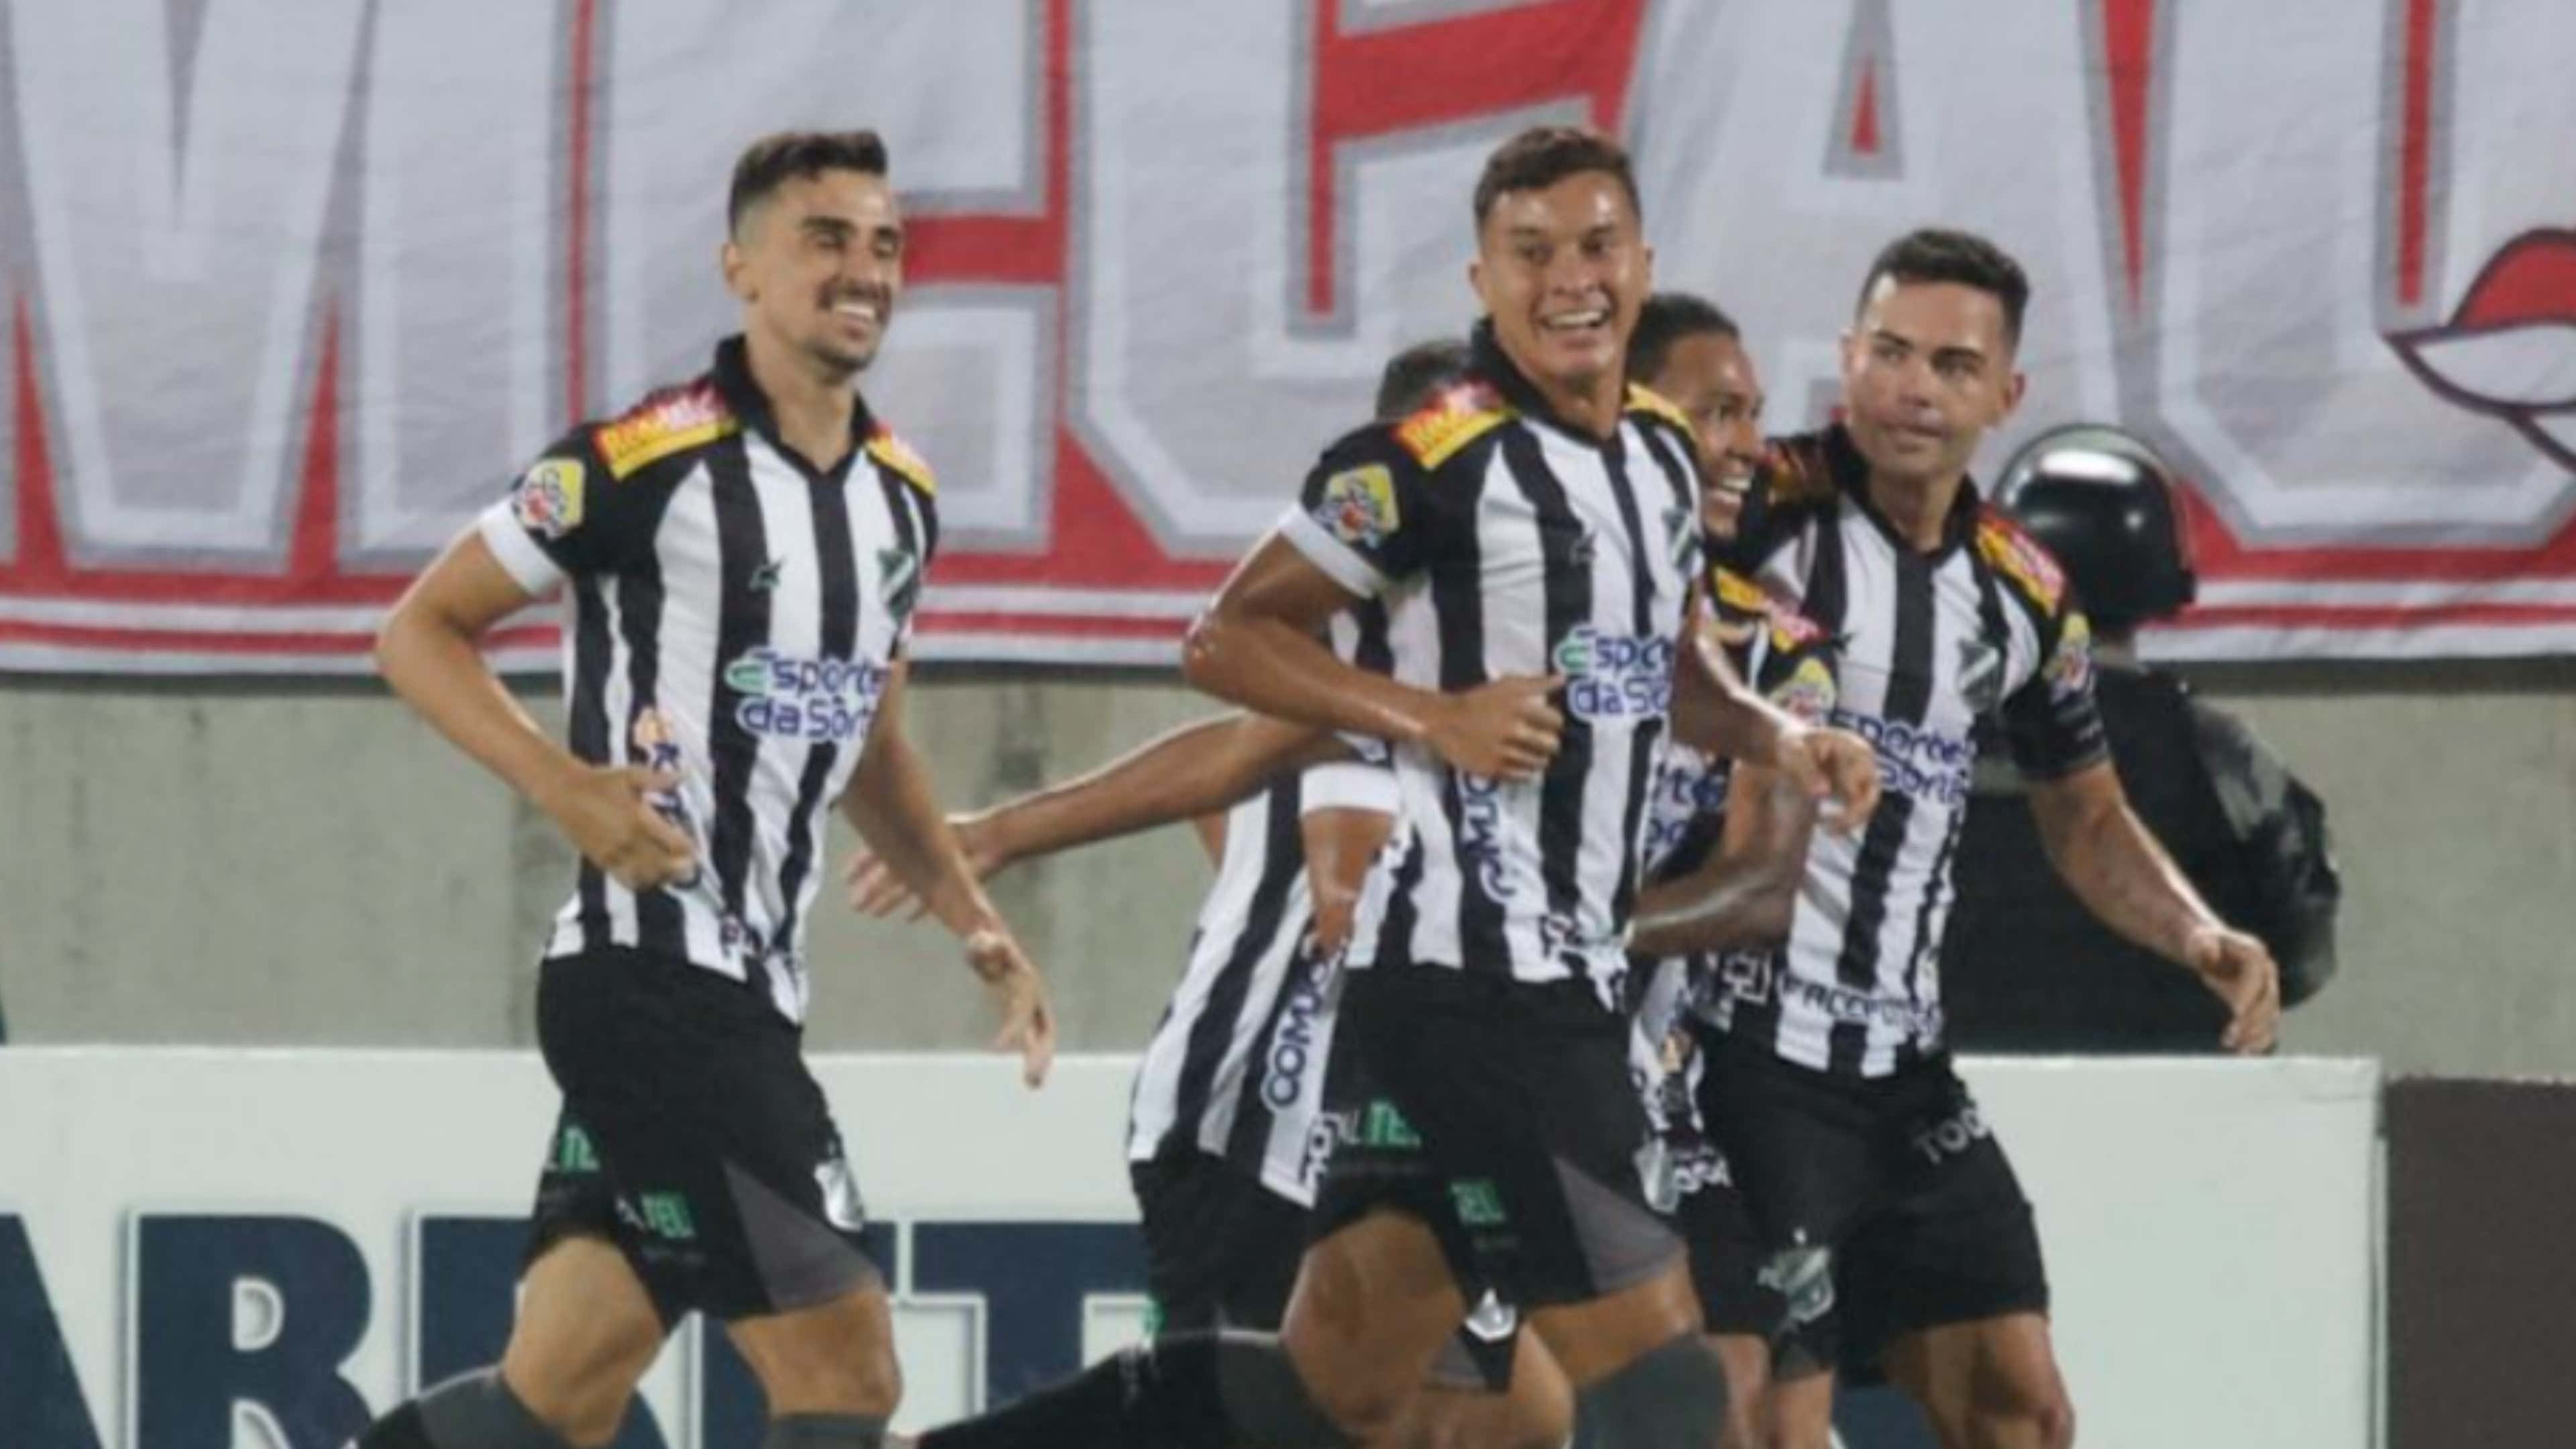 Grêmio x ABC: as prováveis escalações, onde assistir ao vivo, de graça e  online - Copa do Brasil - Br - Futboo.com